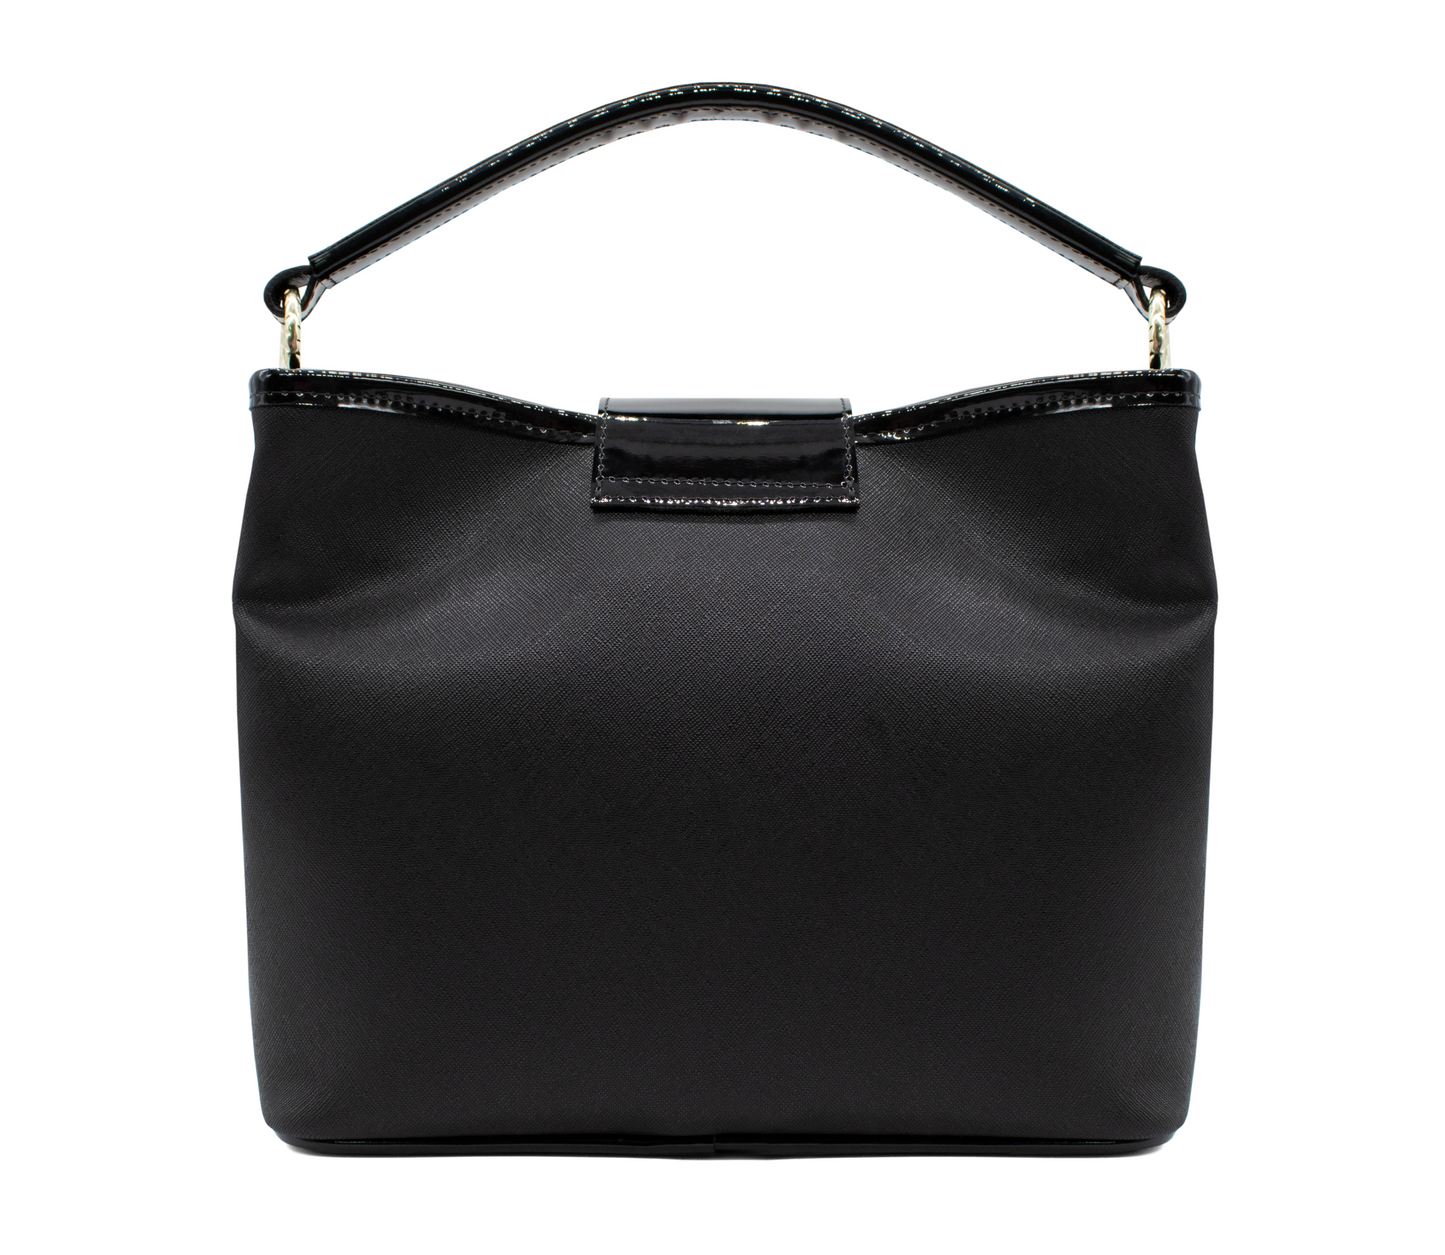 Cavalinho Noble Handbag - Black and White - 18180157.33_3